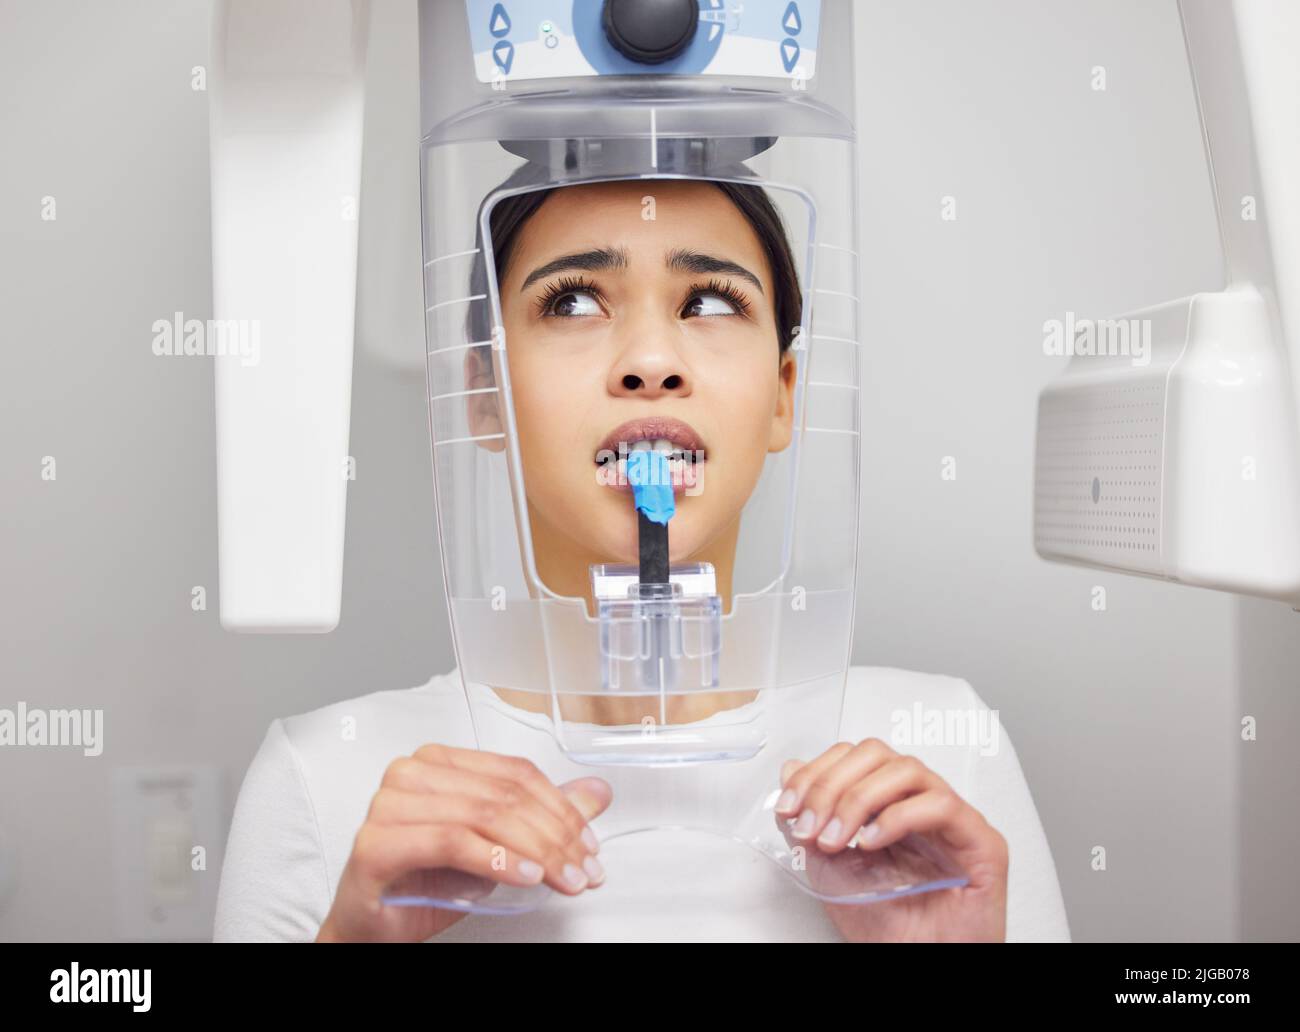 Non mi piace il suono di questa macchina. Una giovane donna che guarda ansiosa mentre usa una macchina a raggi X in un ufficio dentistico. Foto Stock